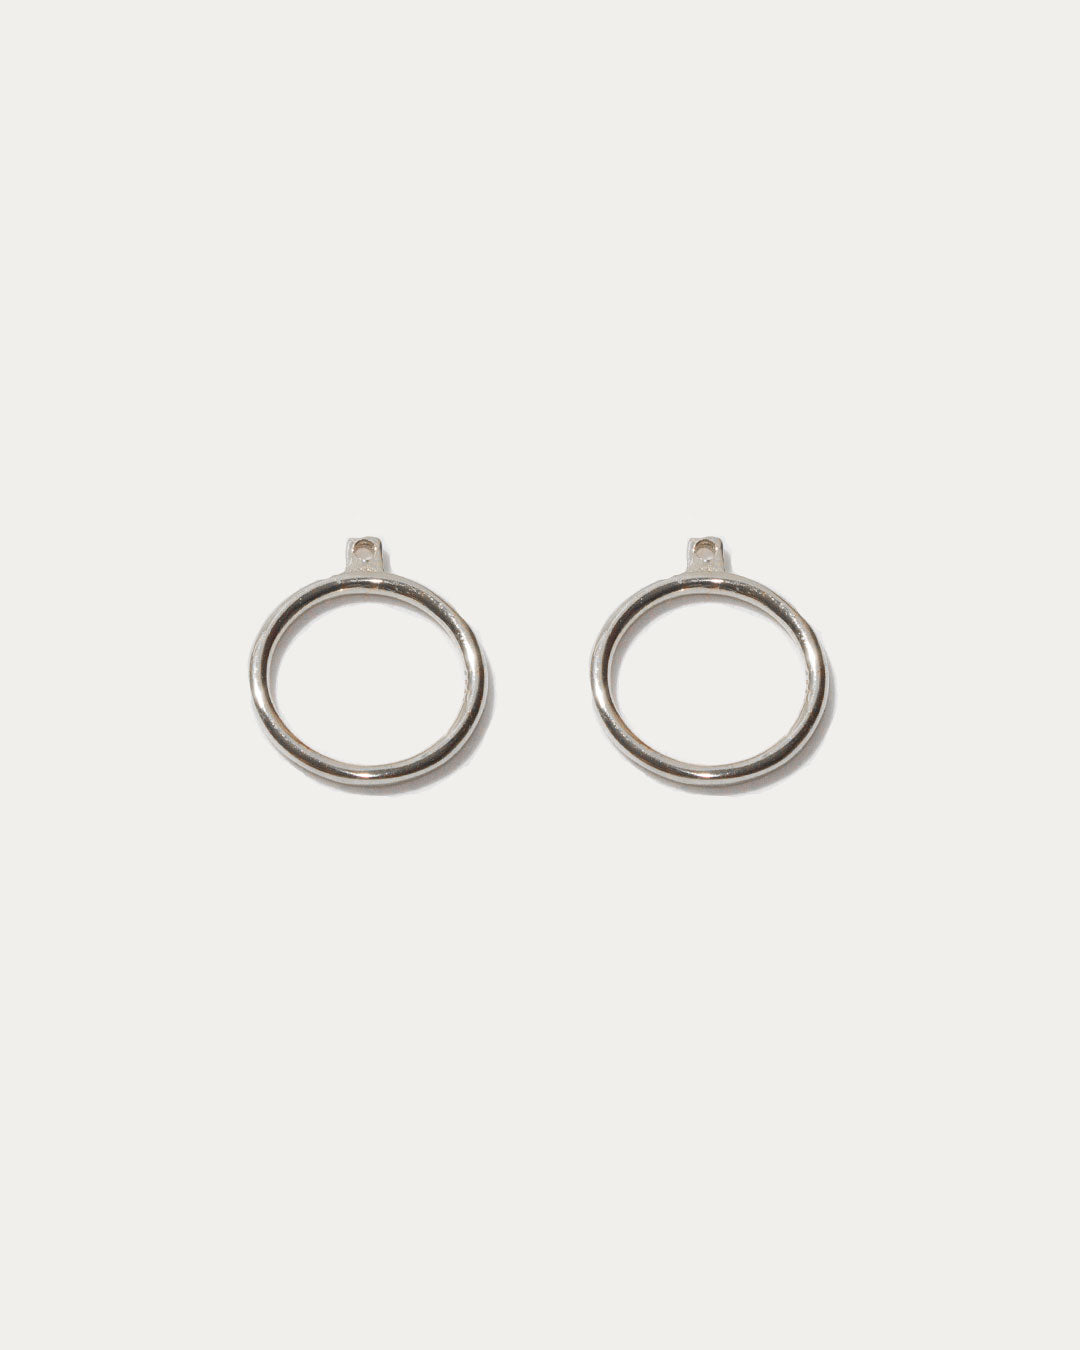 Buy 925 Sterling Silver Diamond Cut Big Hoop Earrings for Women Online